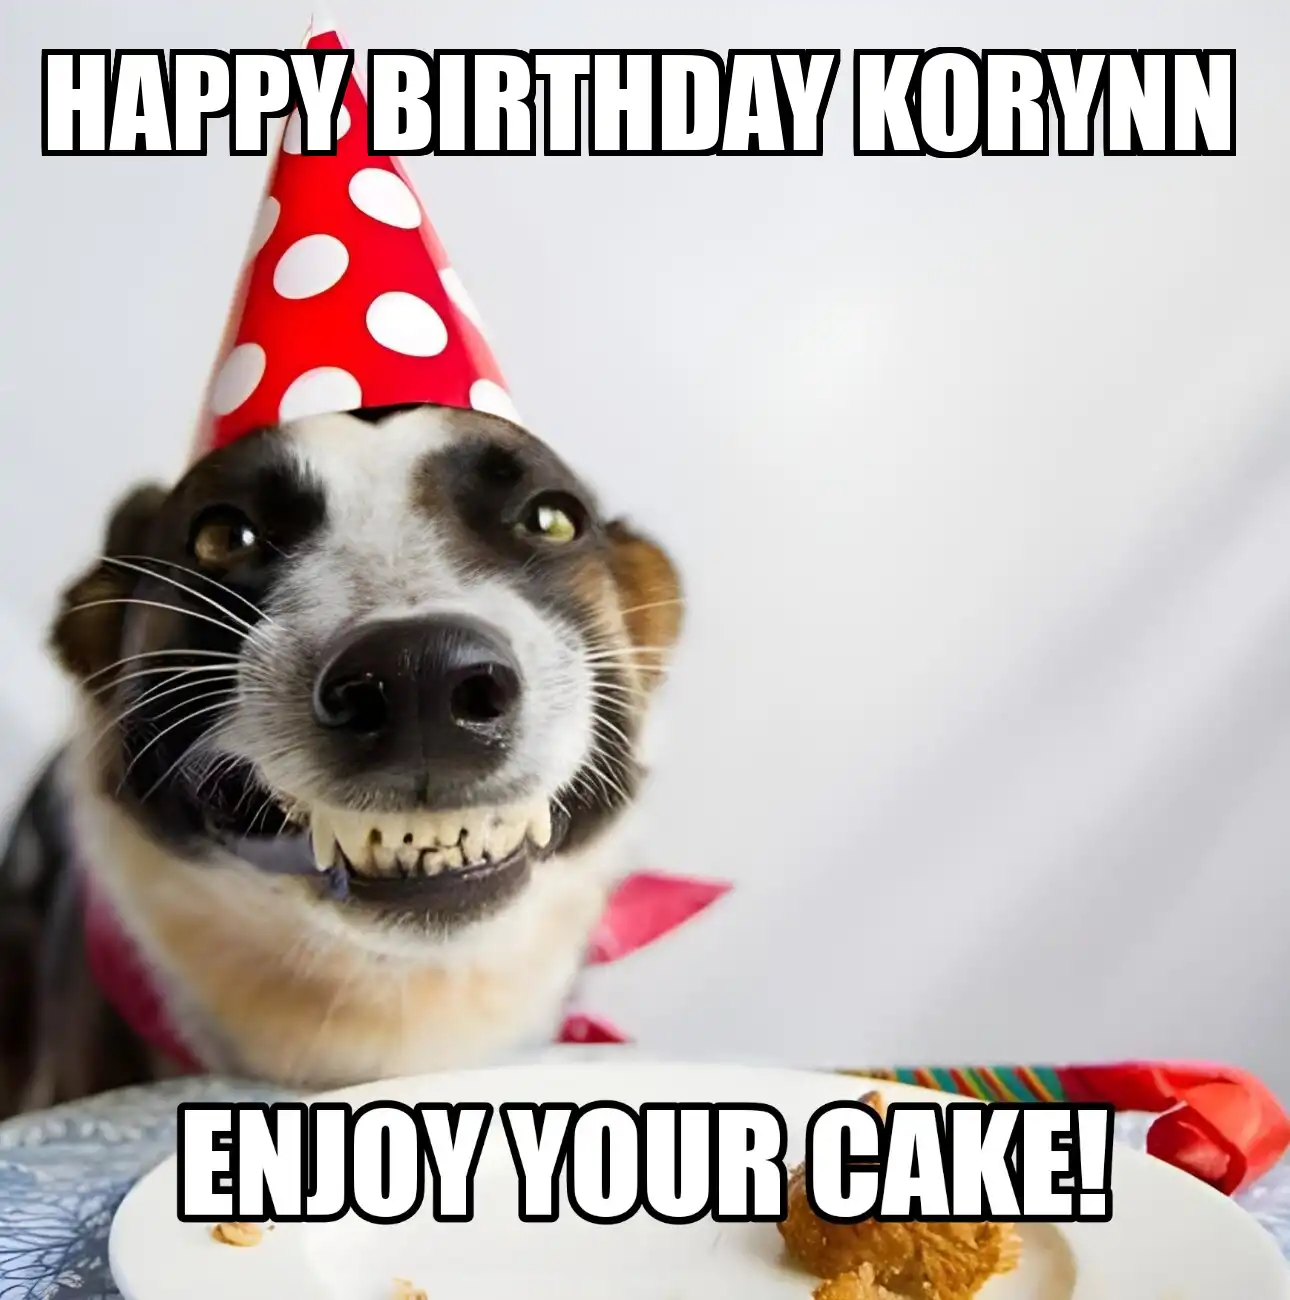 Happy Birthday Korynn Enjoy Your Cake Dog Meme